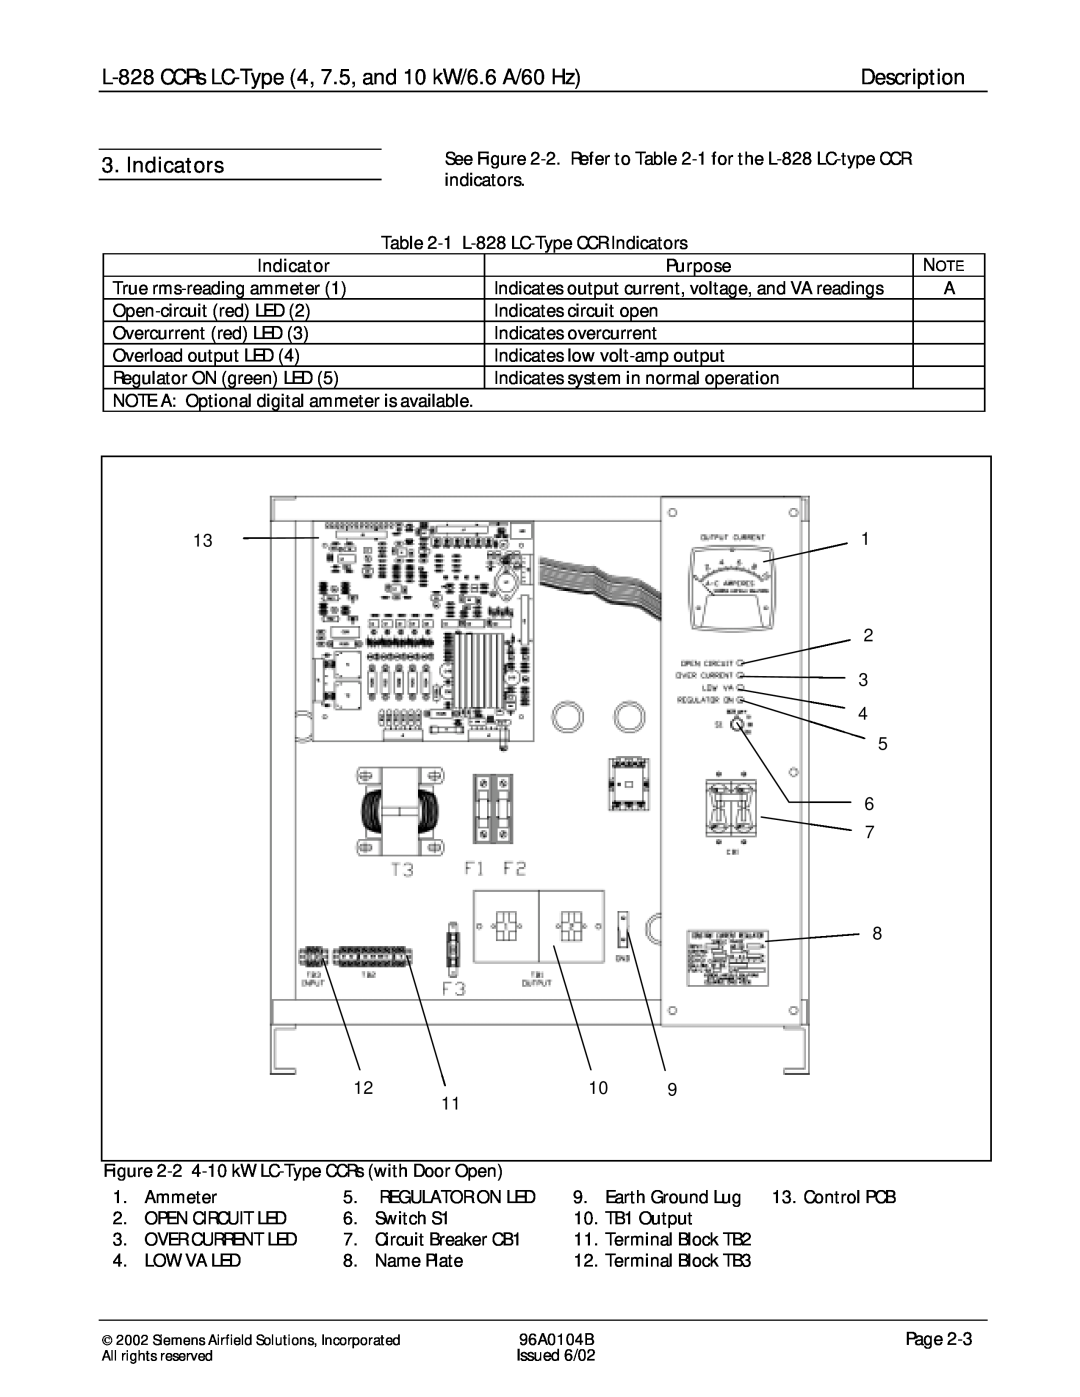 Siemens manual Indicators, L-828CCRs LC-Type4, 7.5, and 10 kW/6.6 A/60 Hz, Description, Purpose 